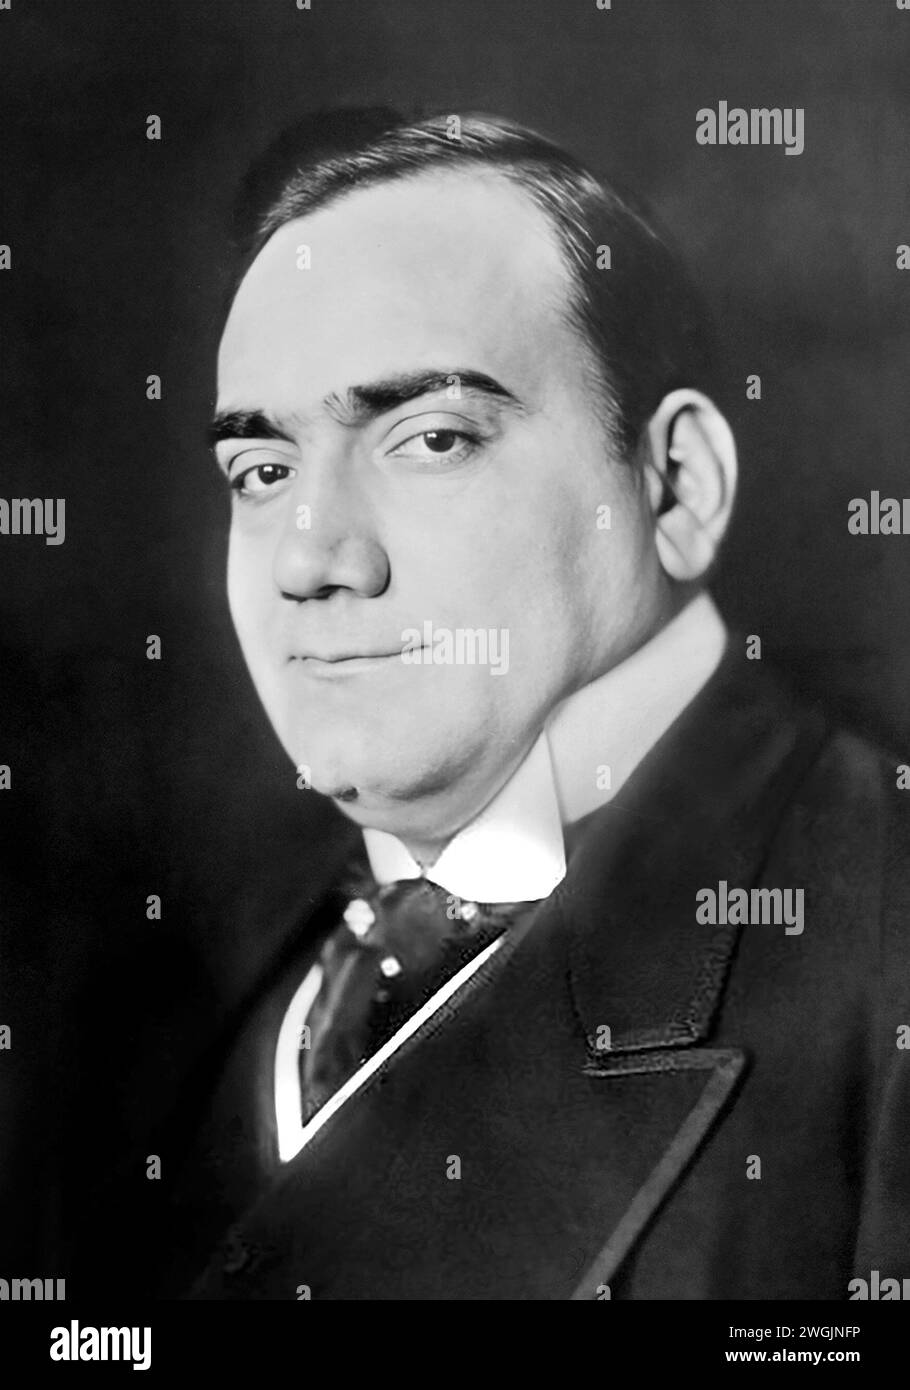 Enrico Caruso. Portrait du ténor italien Enrico Caruso (1873-1921) c. 1910 Banque D'Images